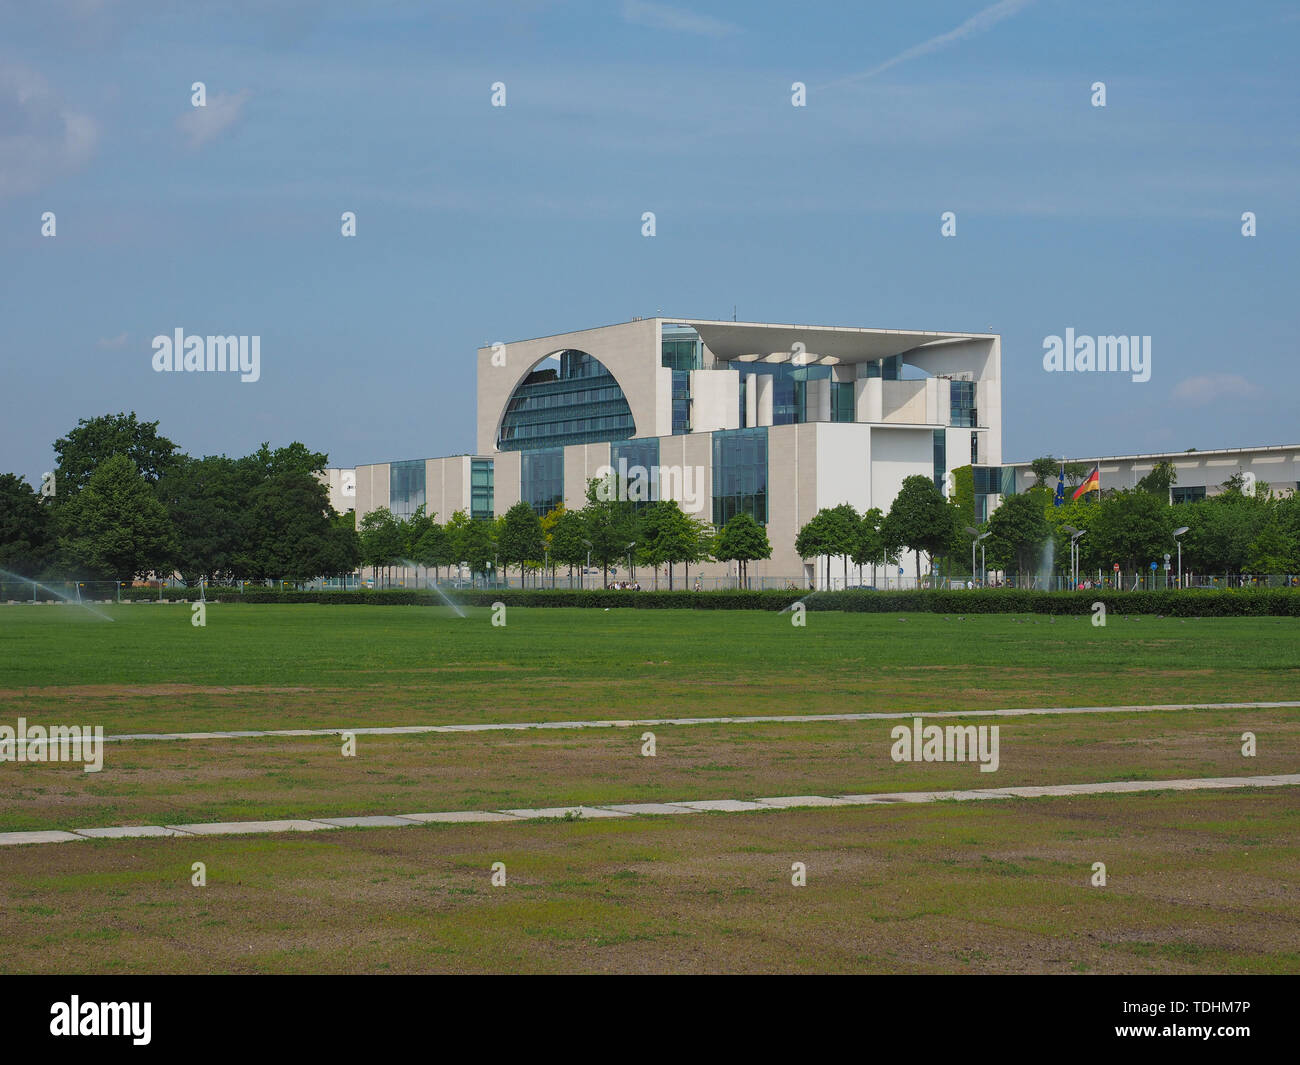 BERLIN, ALLEMAGNE - circa 2019 JUIN : Band des Bundes complexe de bâtiments du gouvernement près du Reichstag, le parlement allemand Banque D'Images